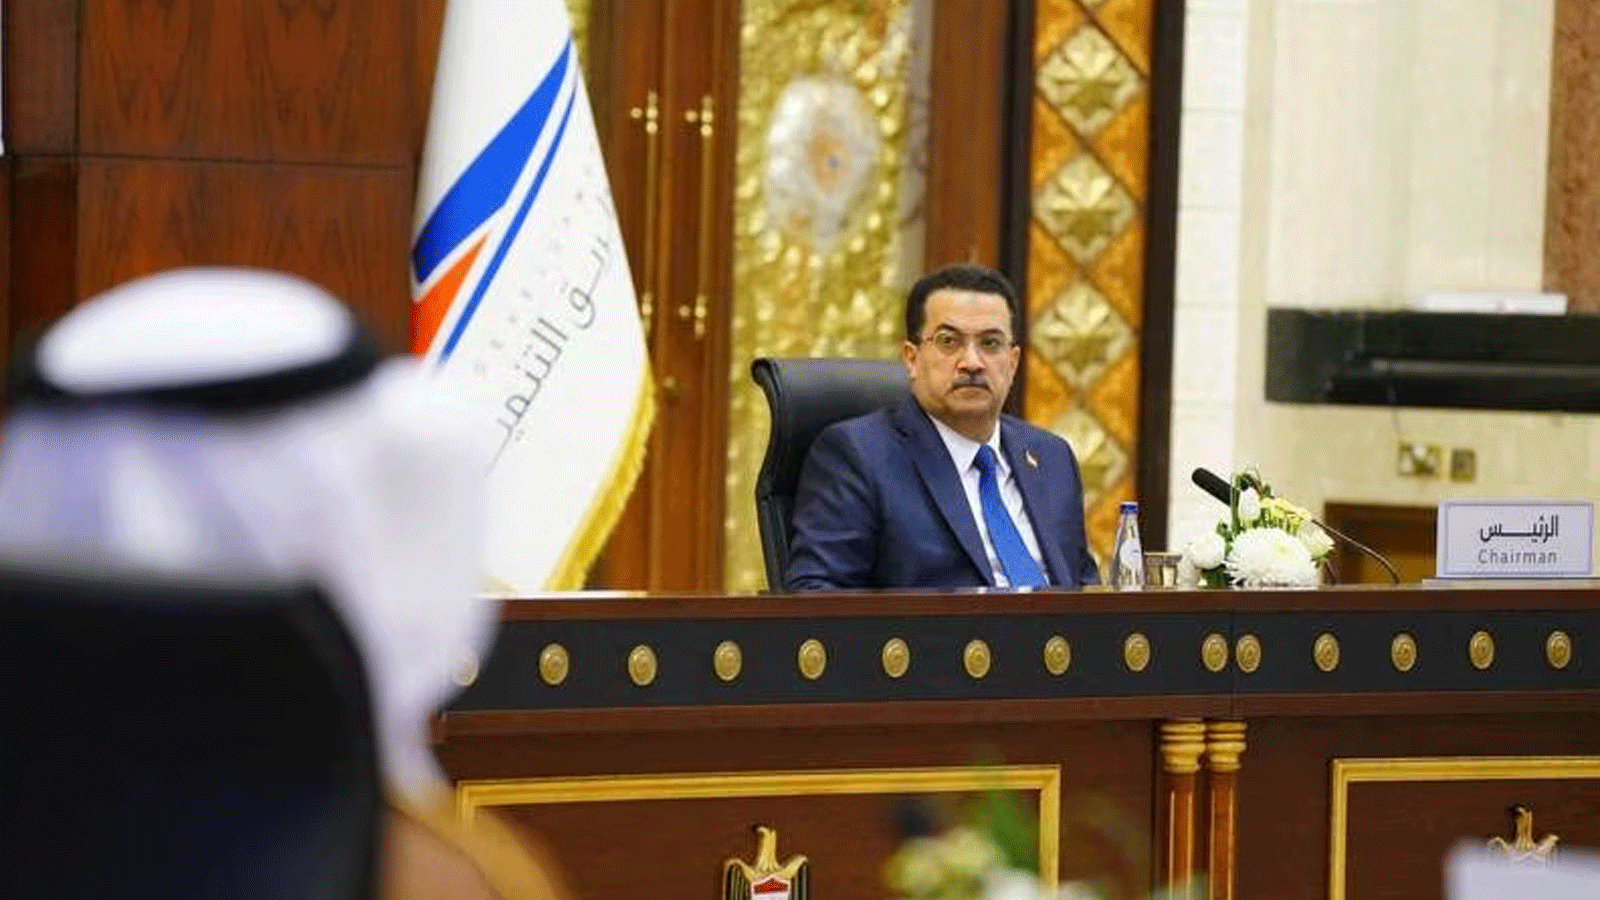 رئيس الوزراء العراقي محمد شياع السوداني يحضر مؤتمرا متعدد الجنسيات حول مشروع طريق التنمية المقترح في العراق في بغداد في 27 ايار\مايو 2023